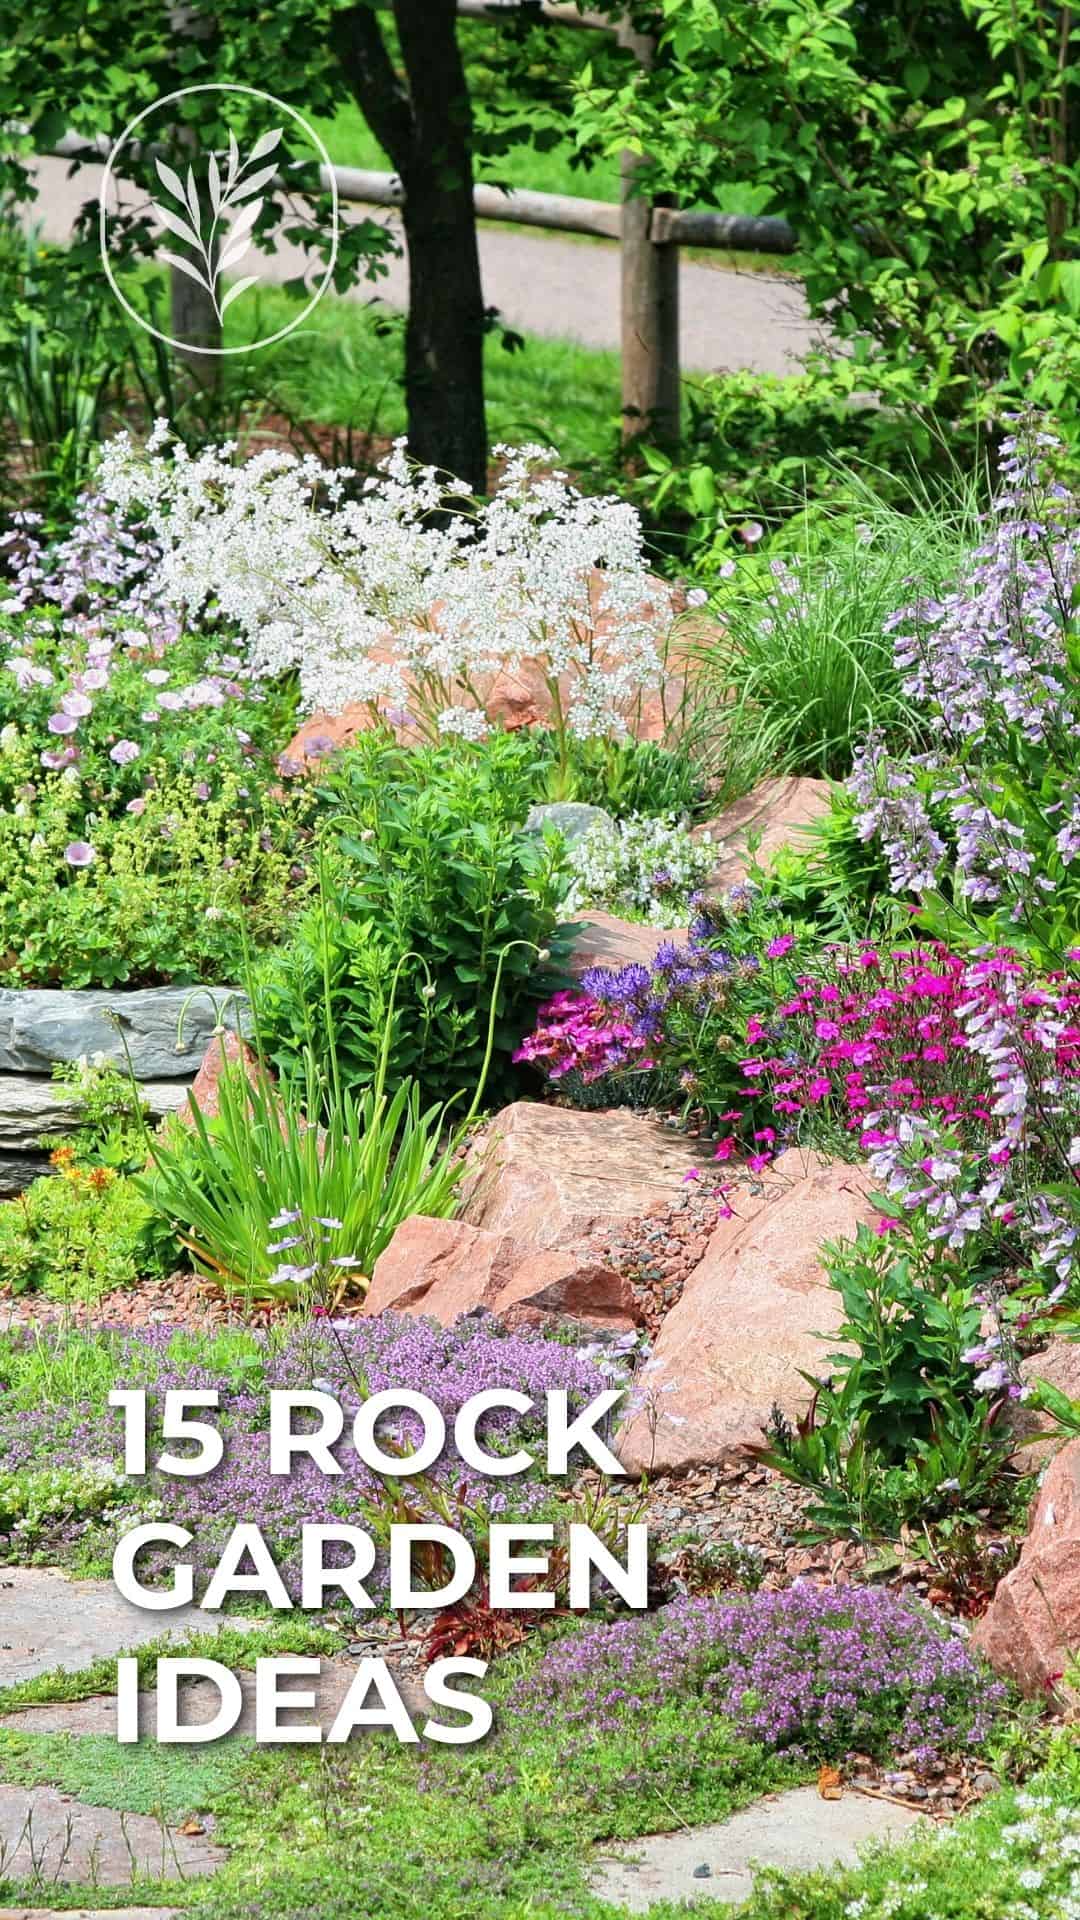 15 rock garden ideas - story via @home4theharvest